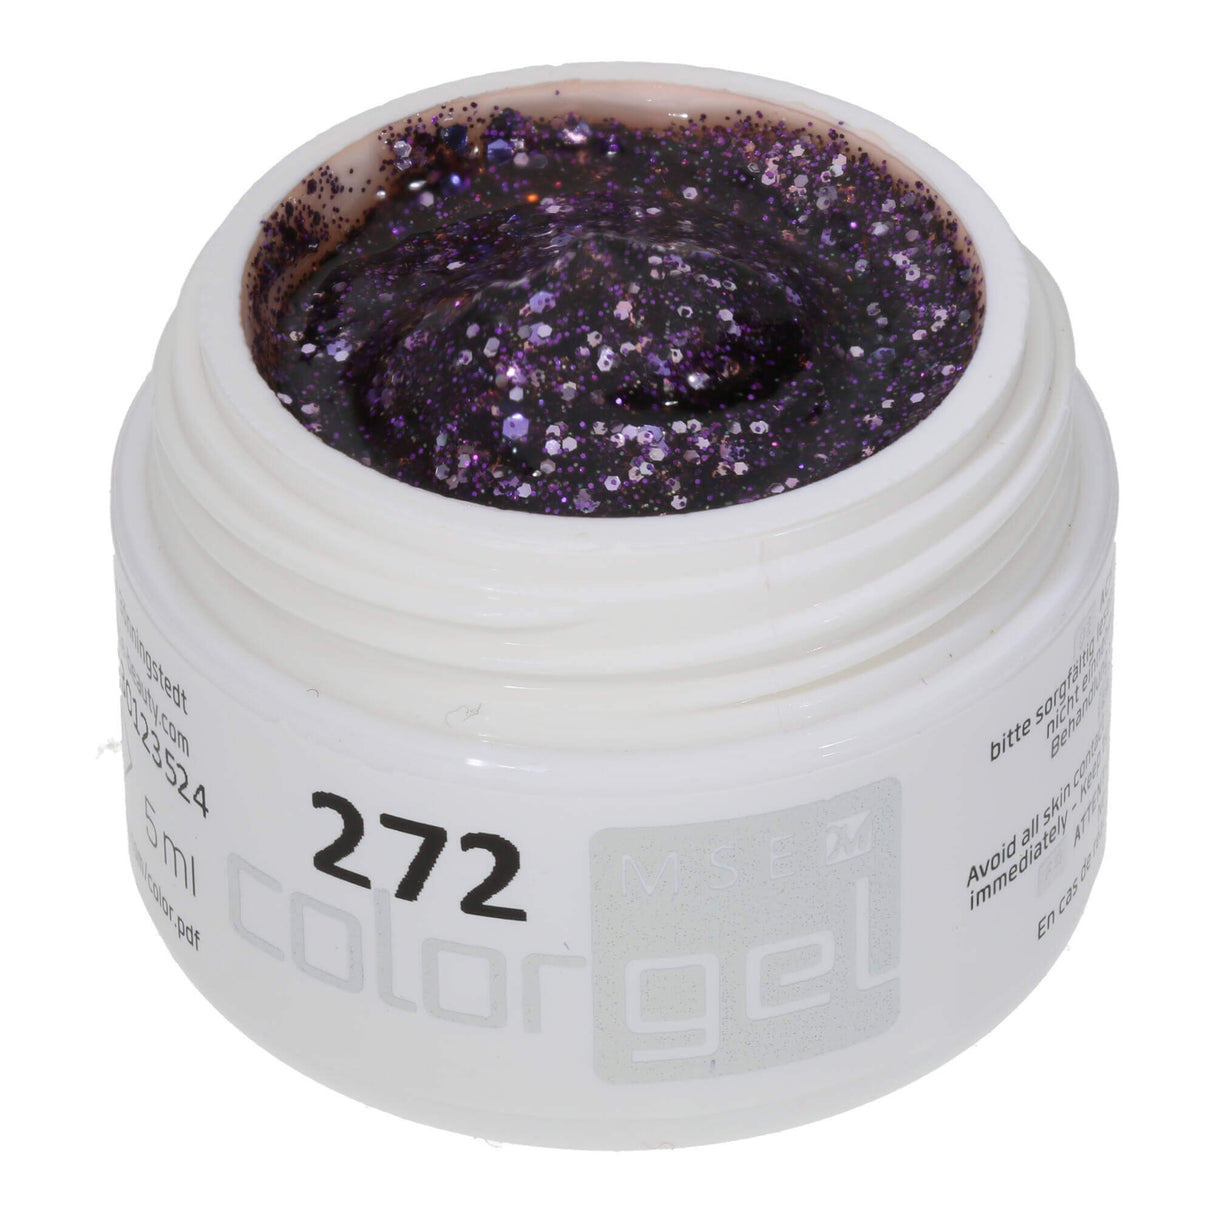 # 272 Premium-GLITTER Color Gel 5ml Chất gel trong suốt với ánh kim tuyến với các sắc độ tím khác nhau